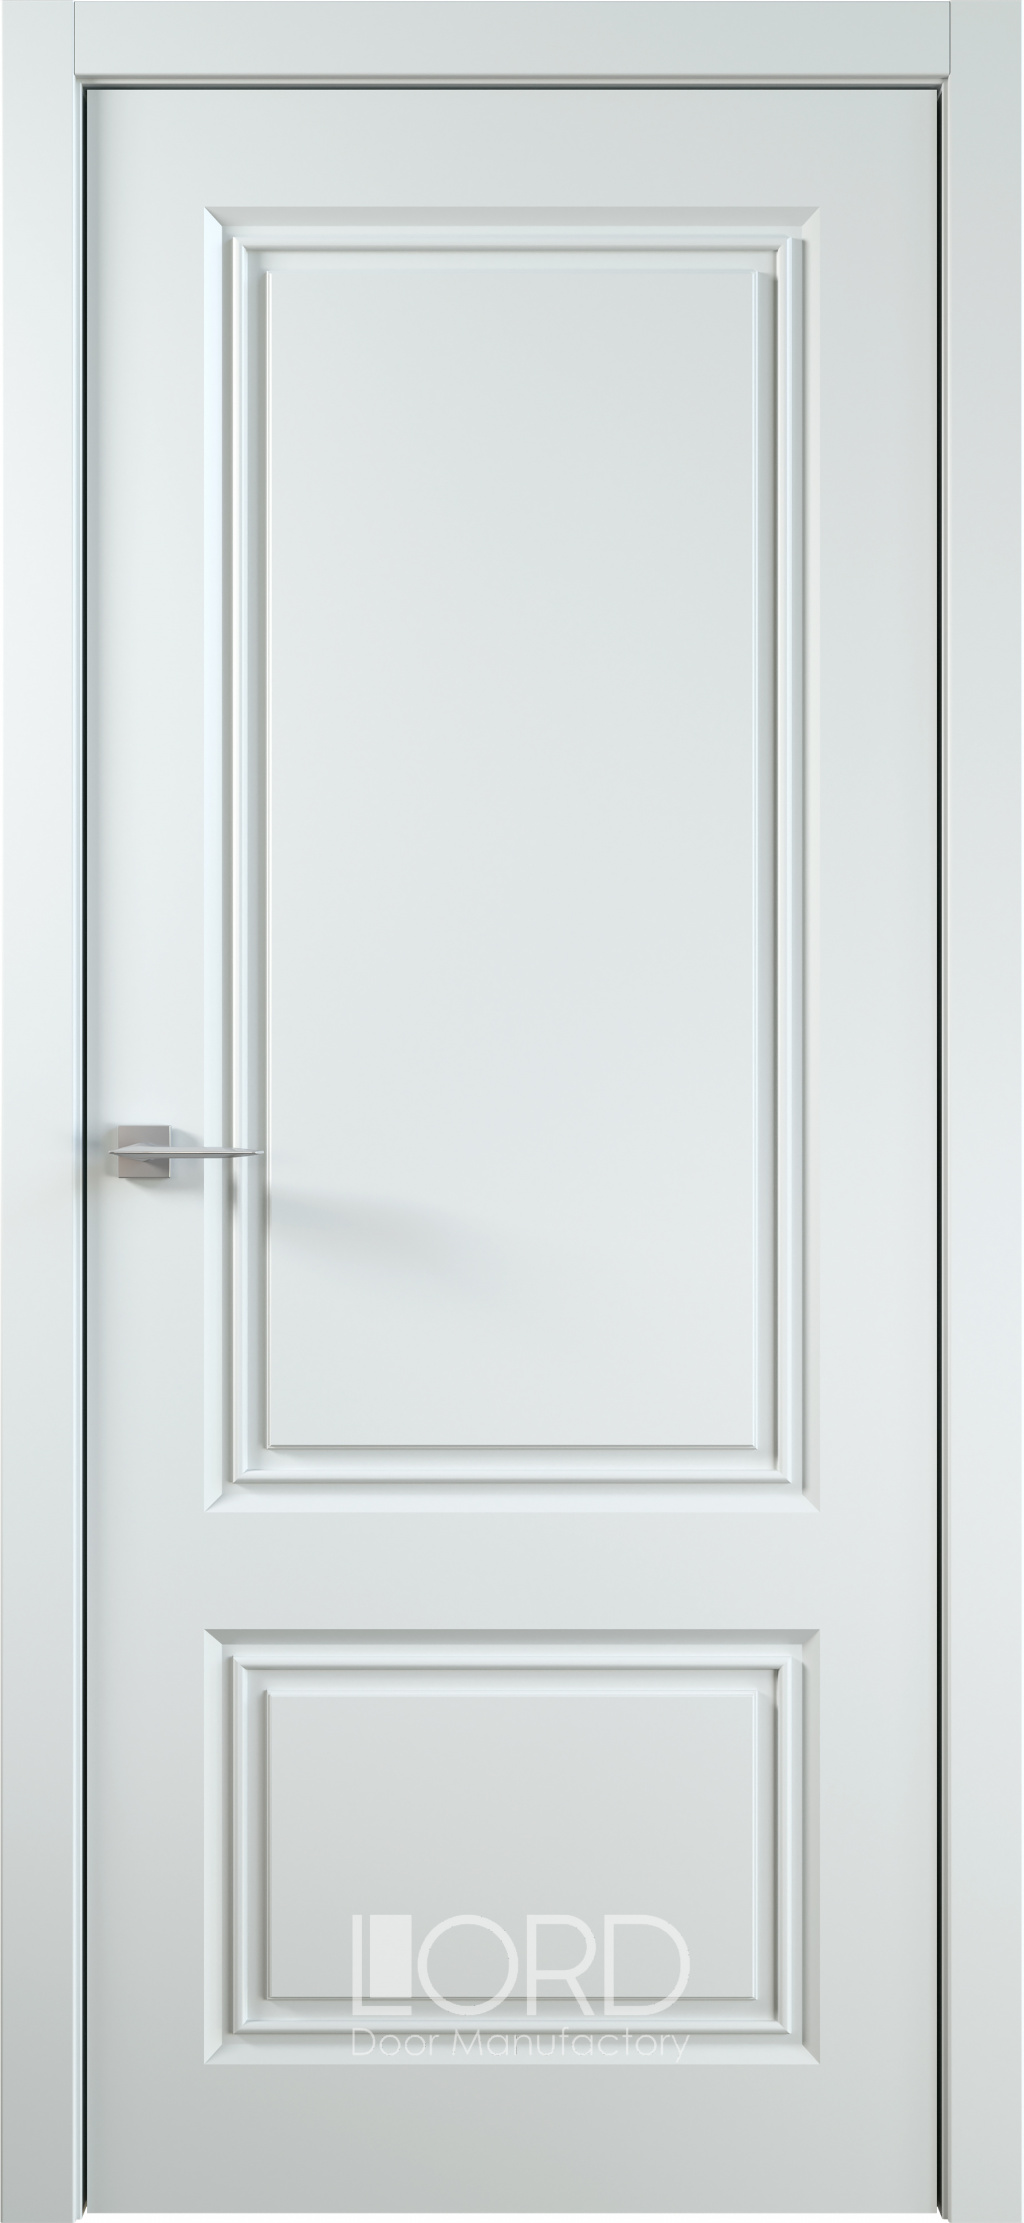 Лорд Межкомнатная дверь Ренессанс 1 ДГ, арт. 22933 - фото №1